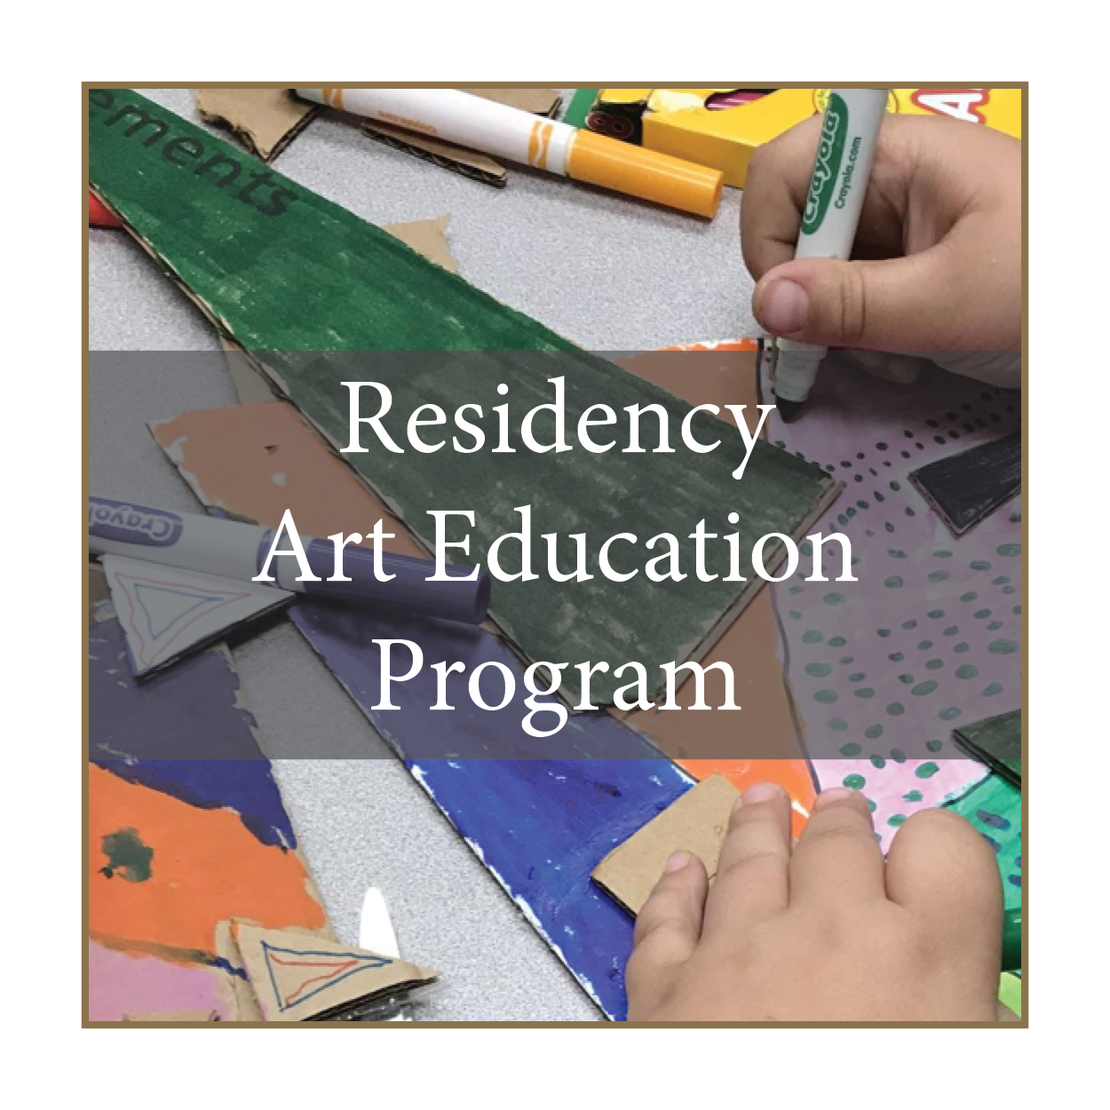 Residency Art Education Program